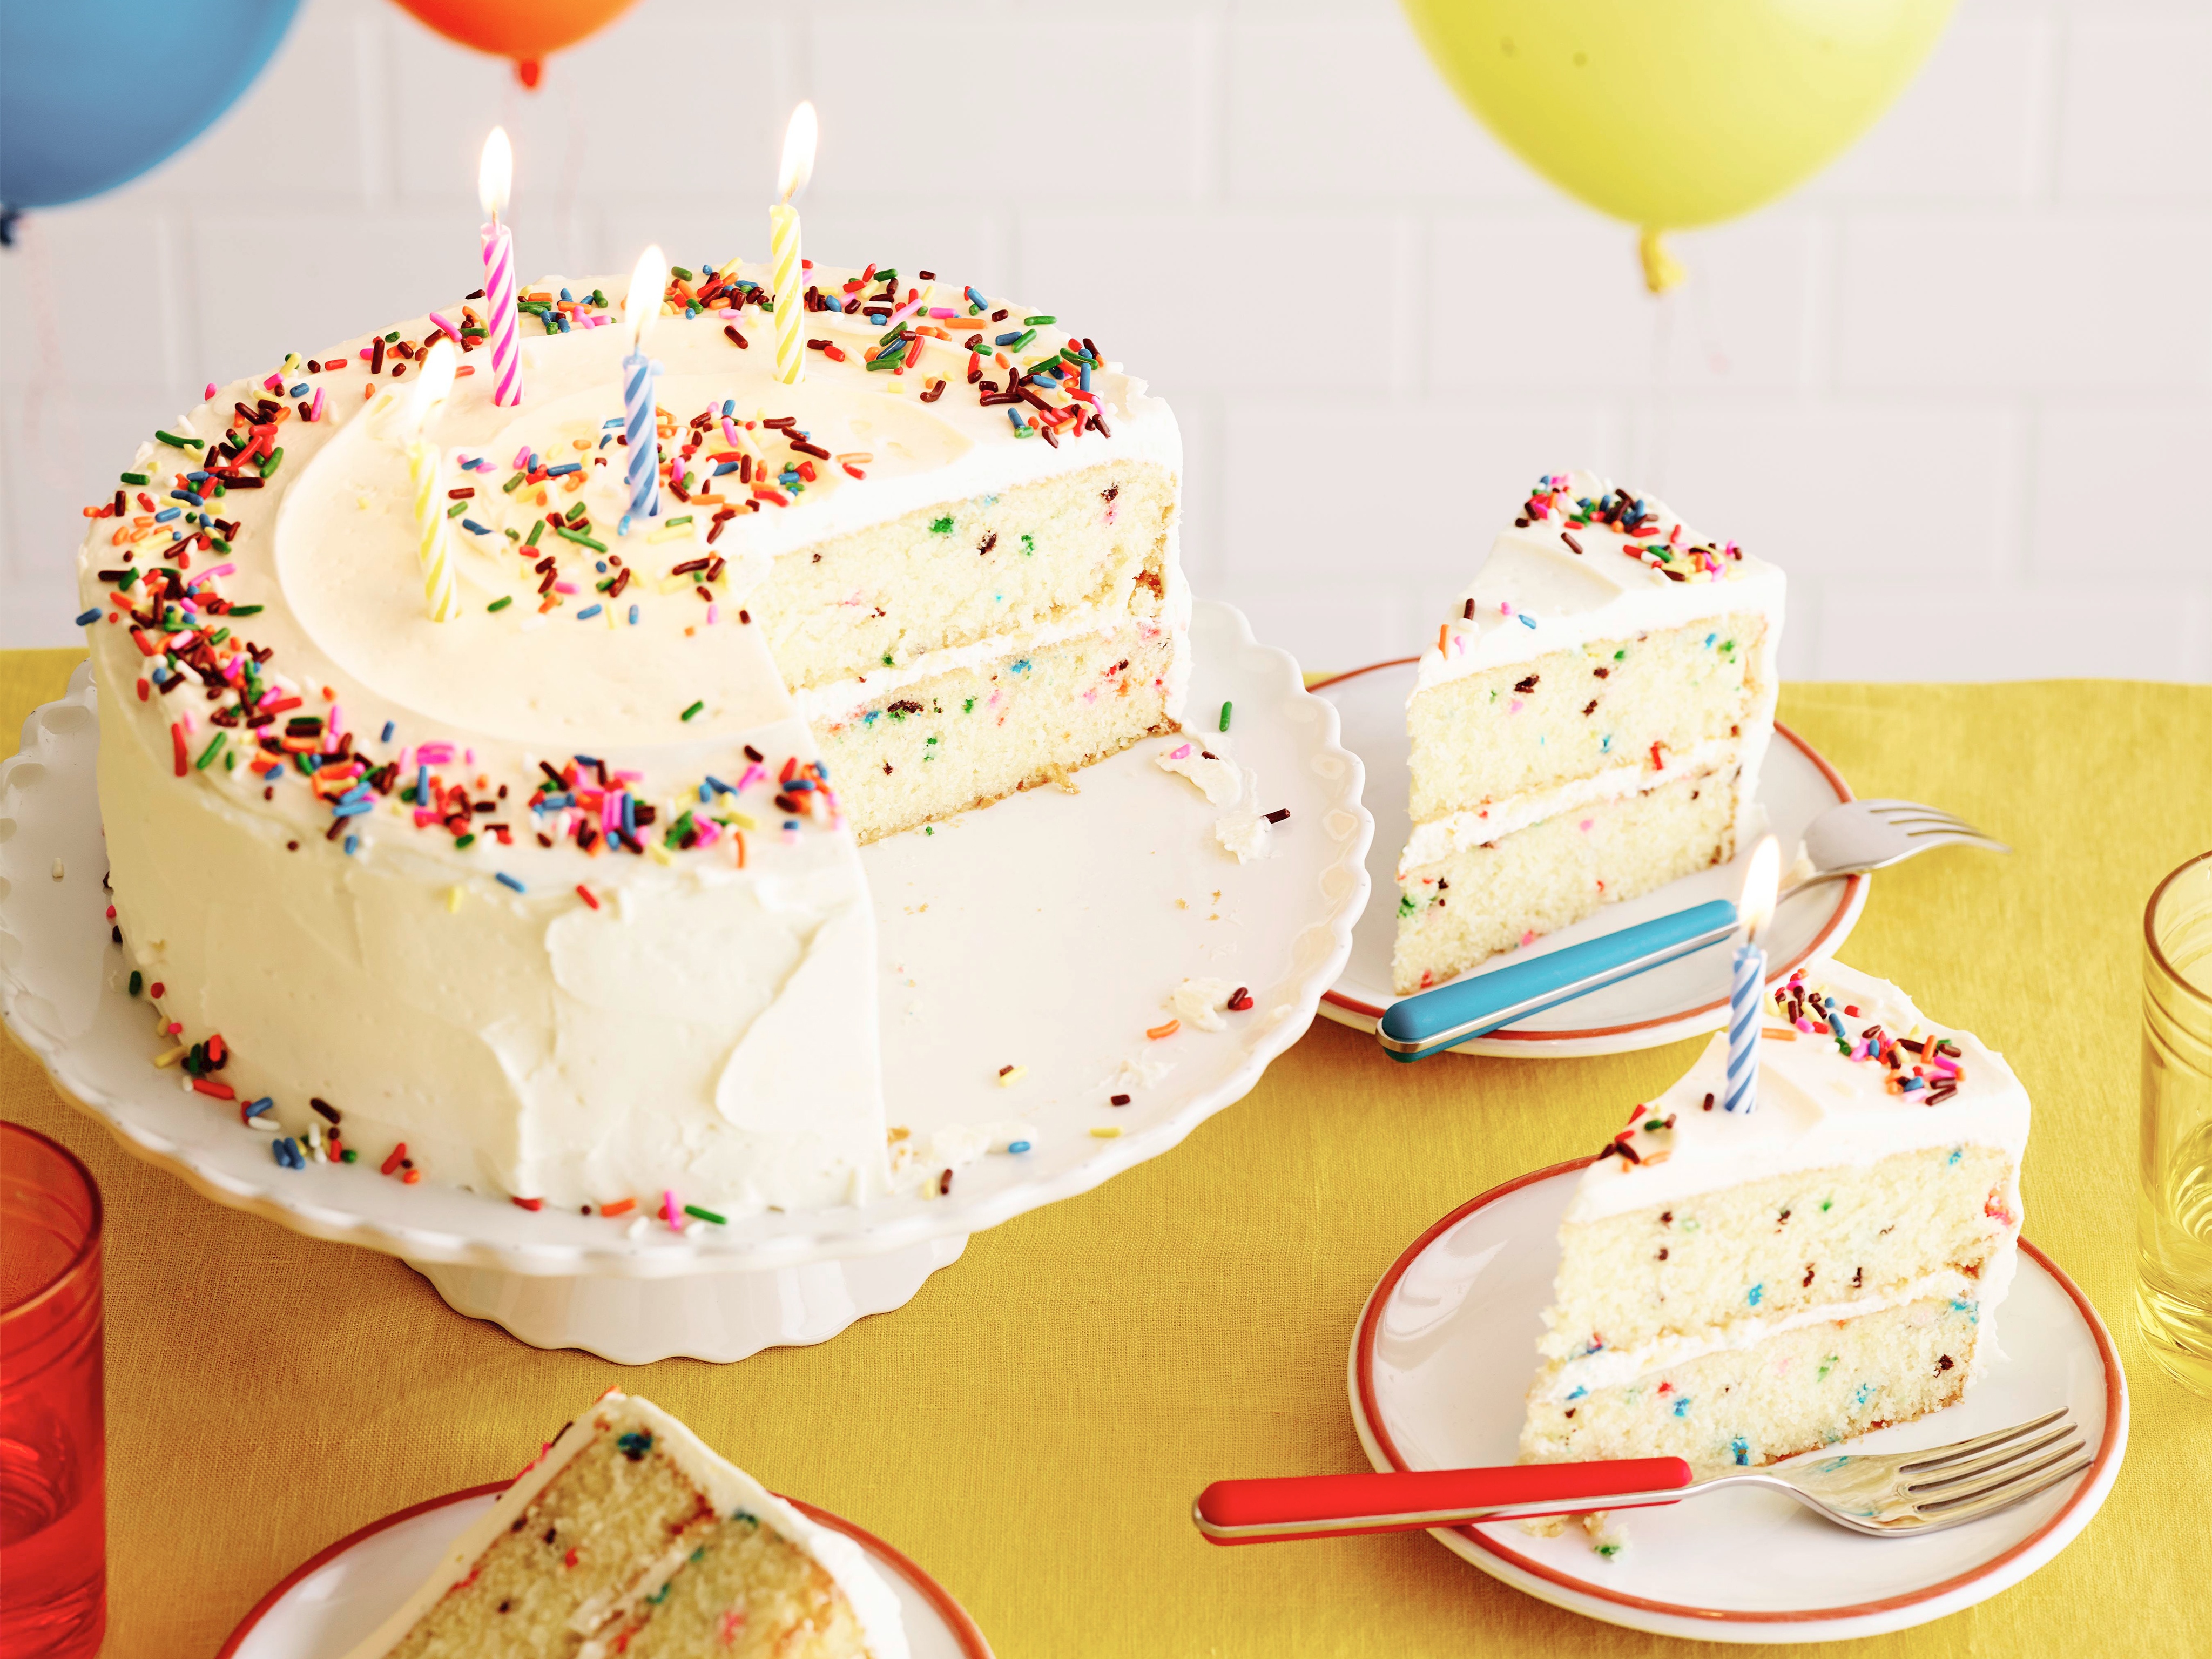 Confetti Party! This confetti birthday cake ...